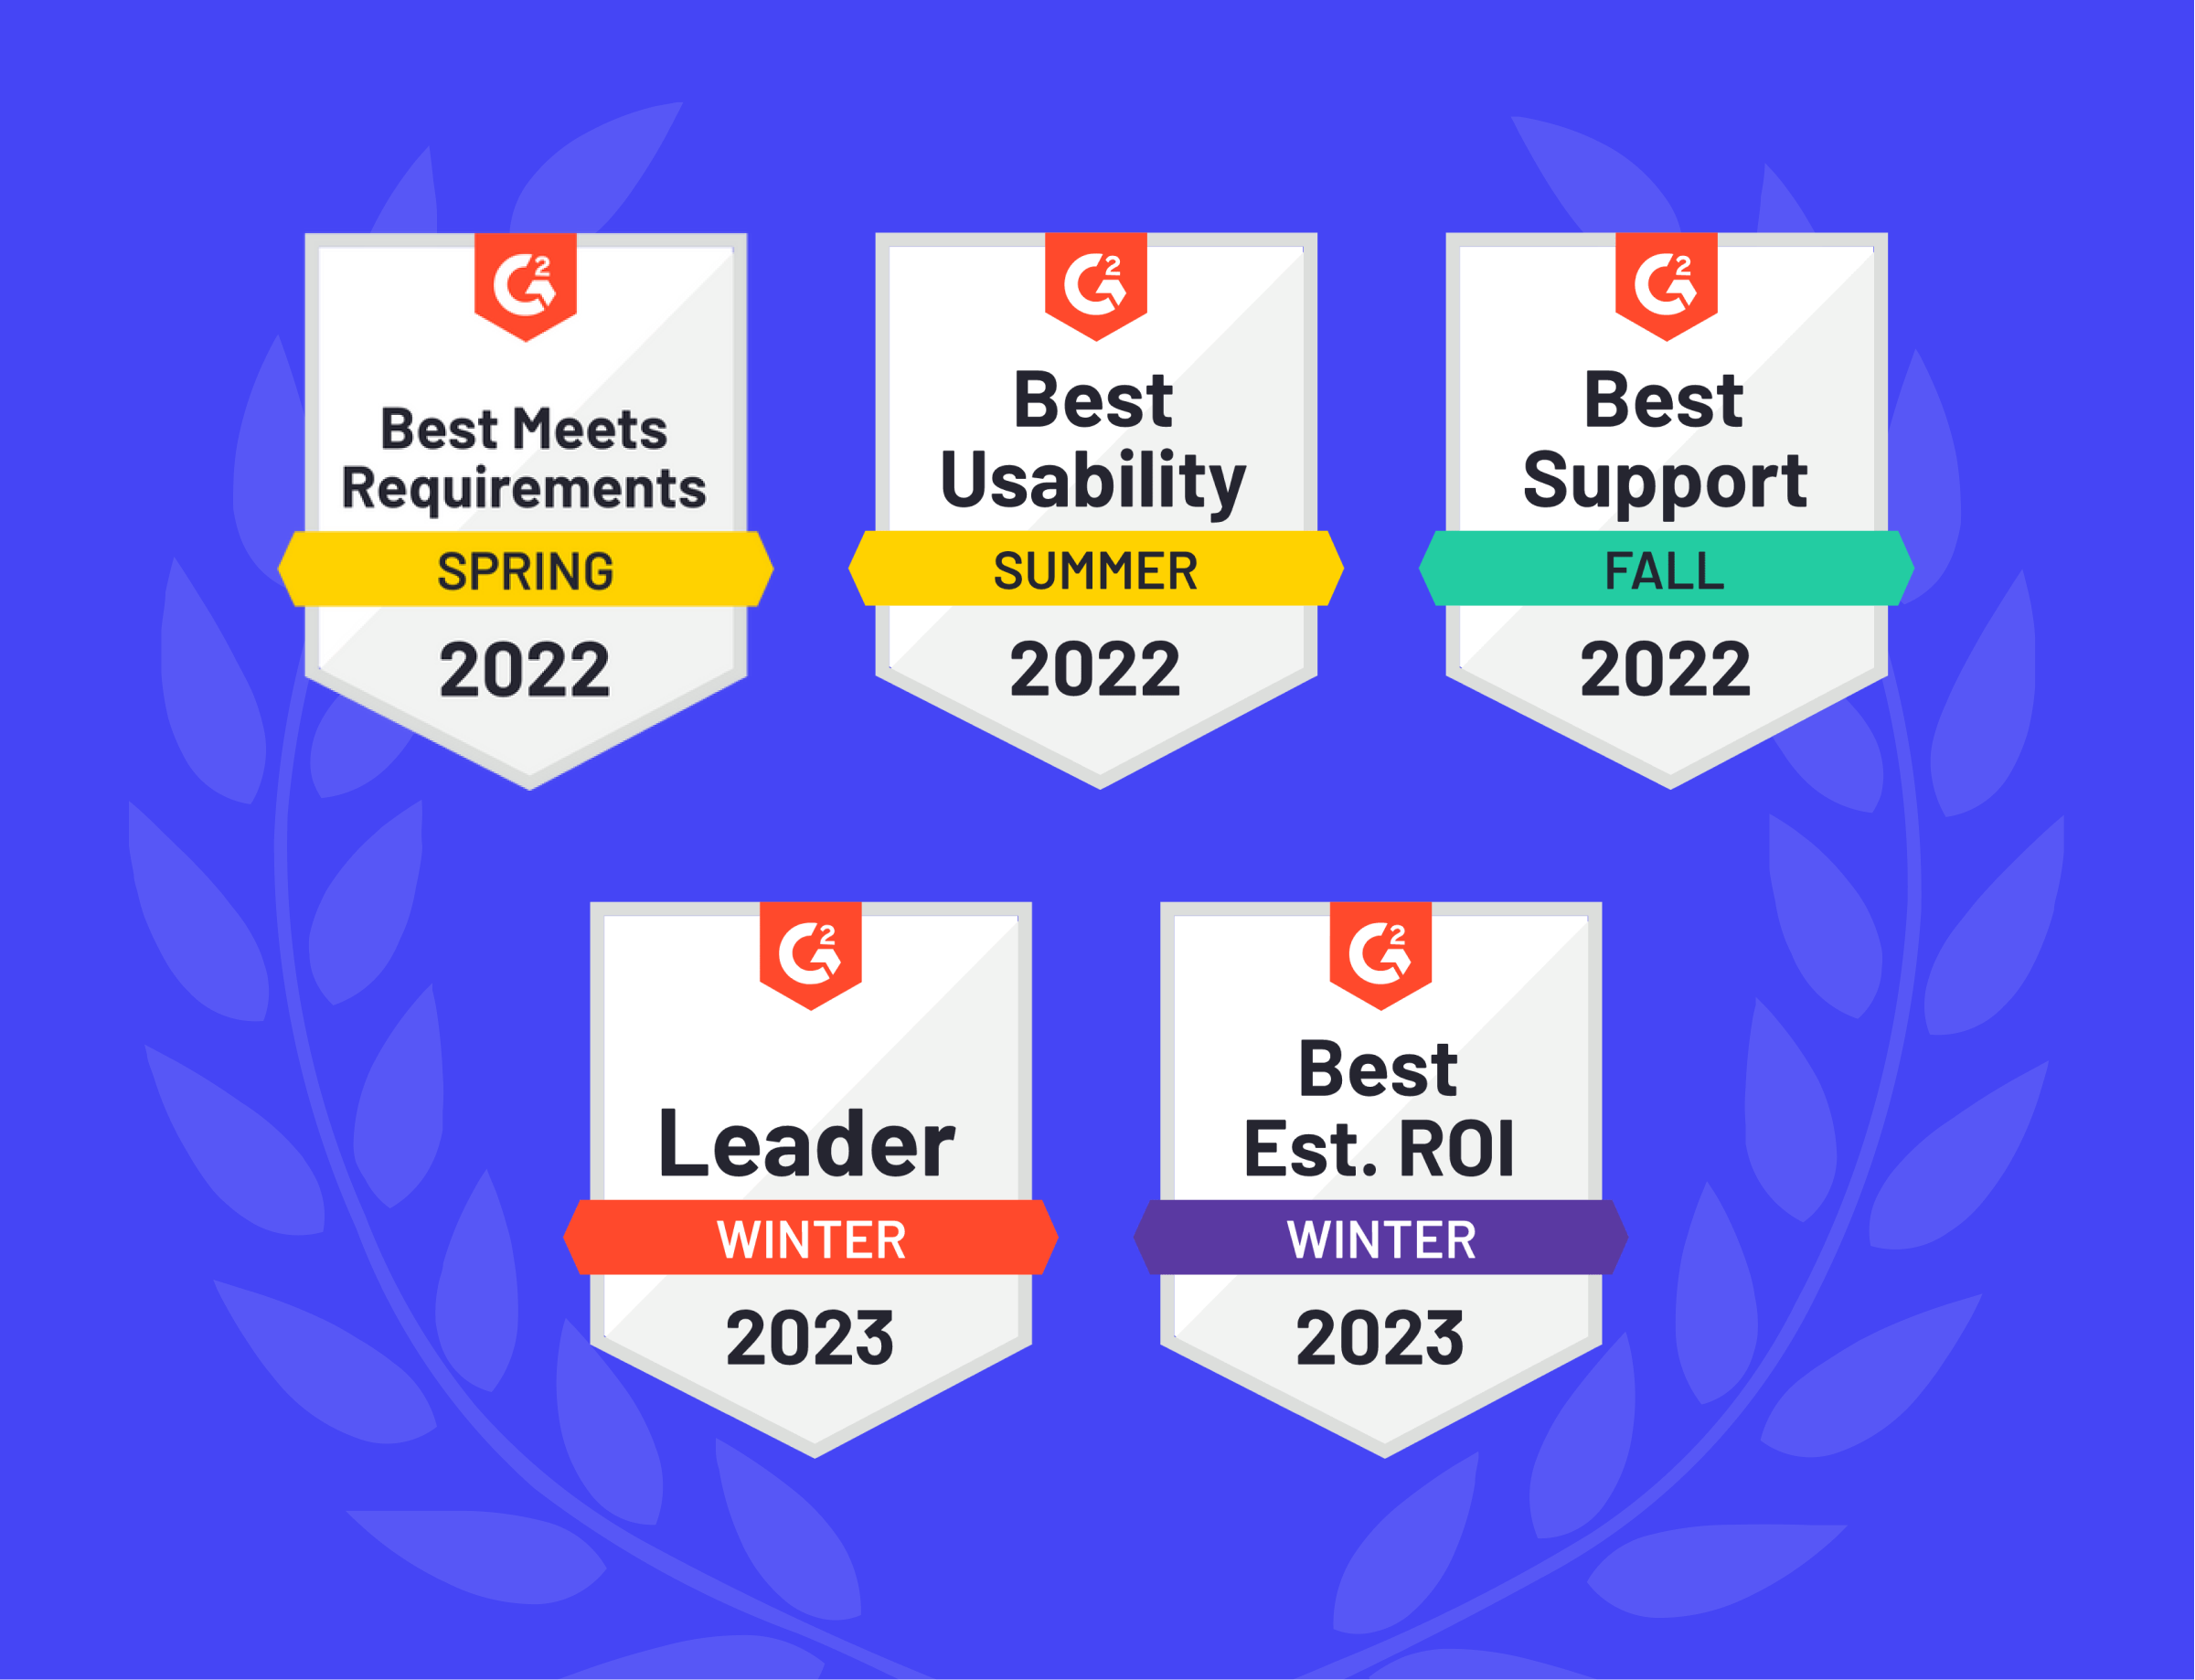 precoro achievements in the year 2022